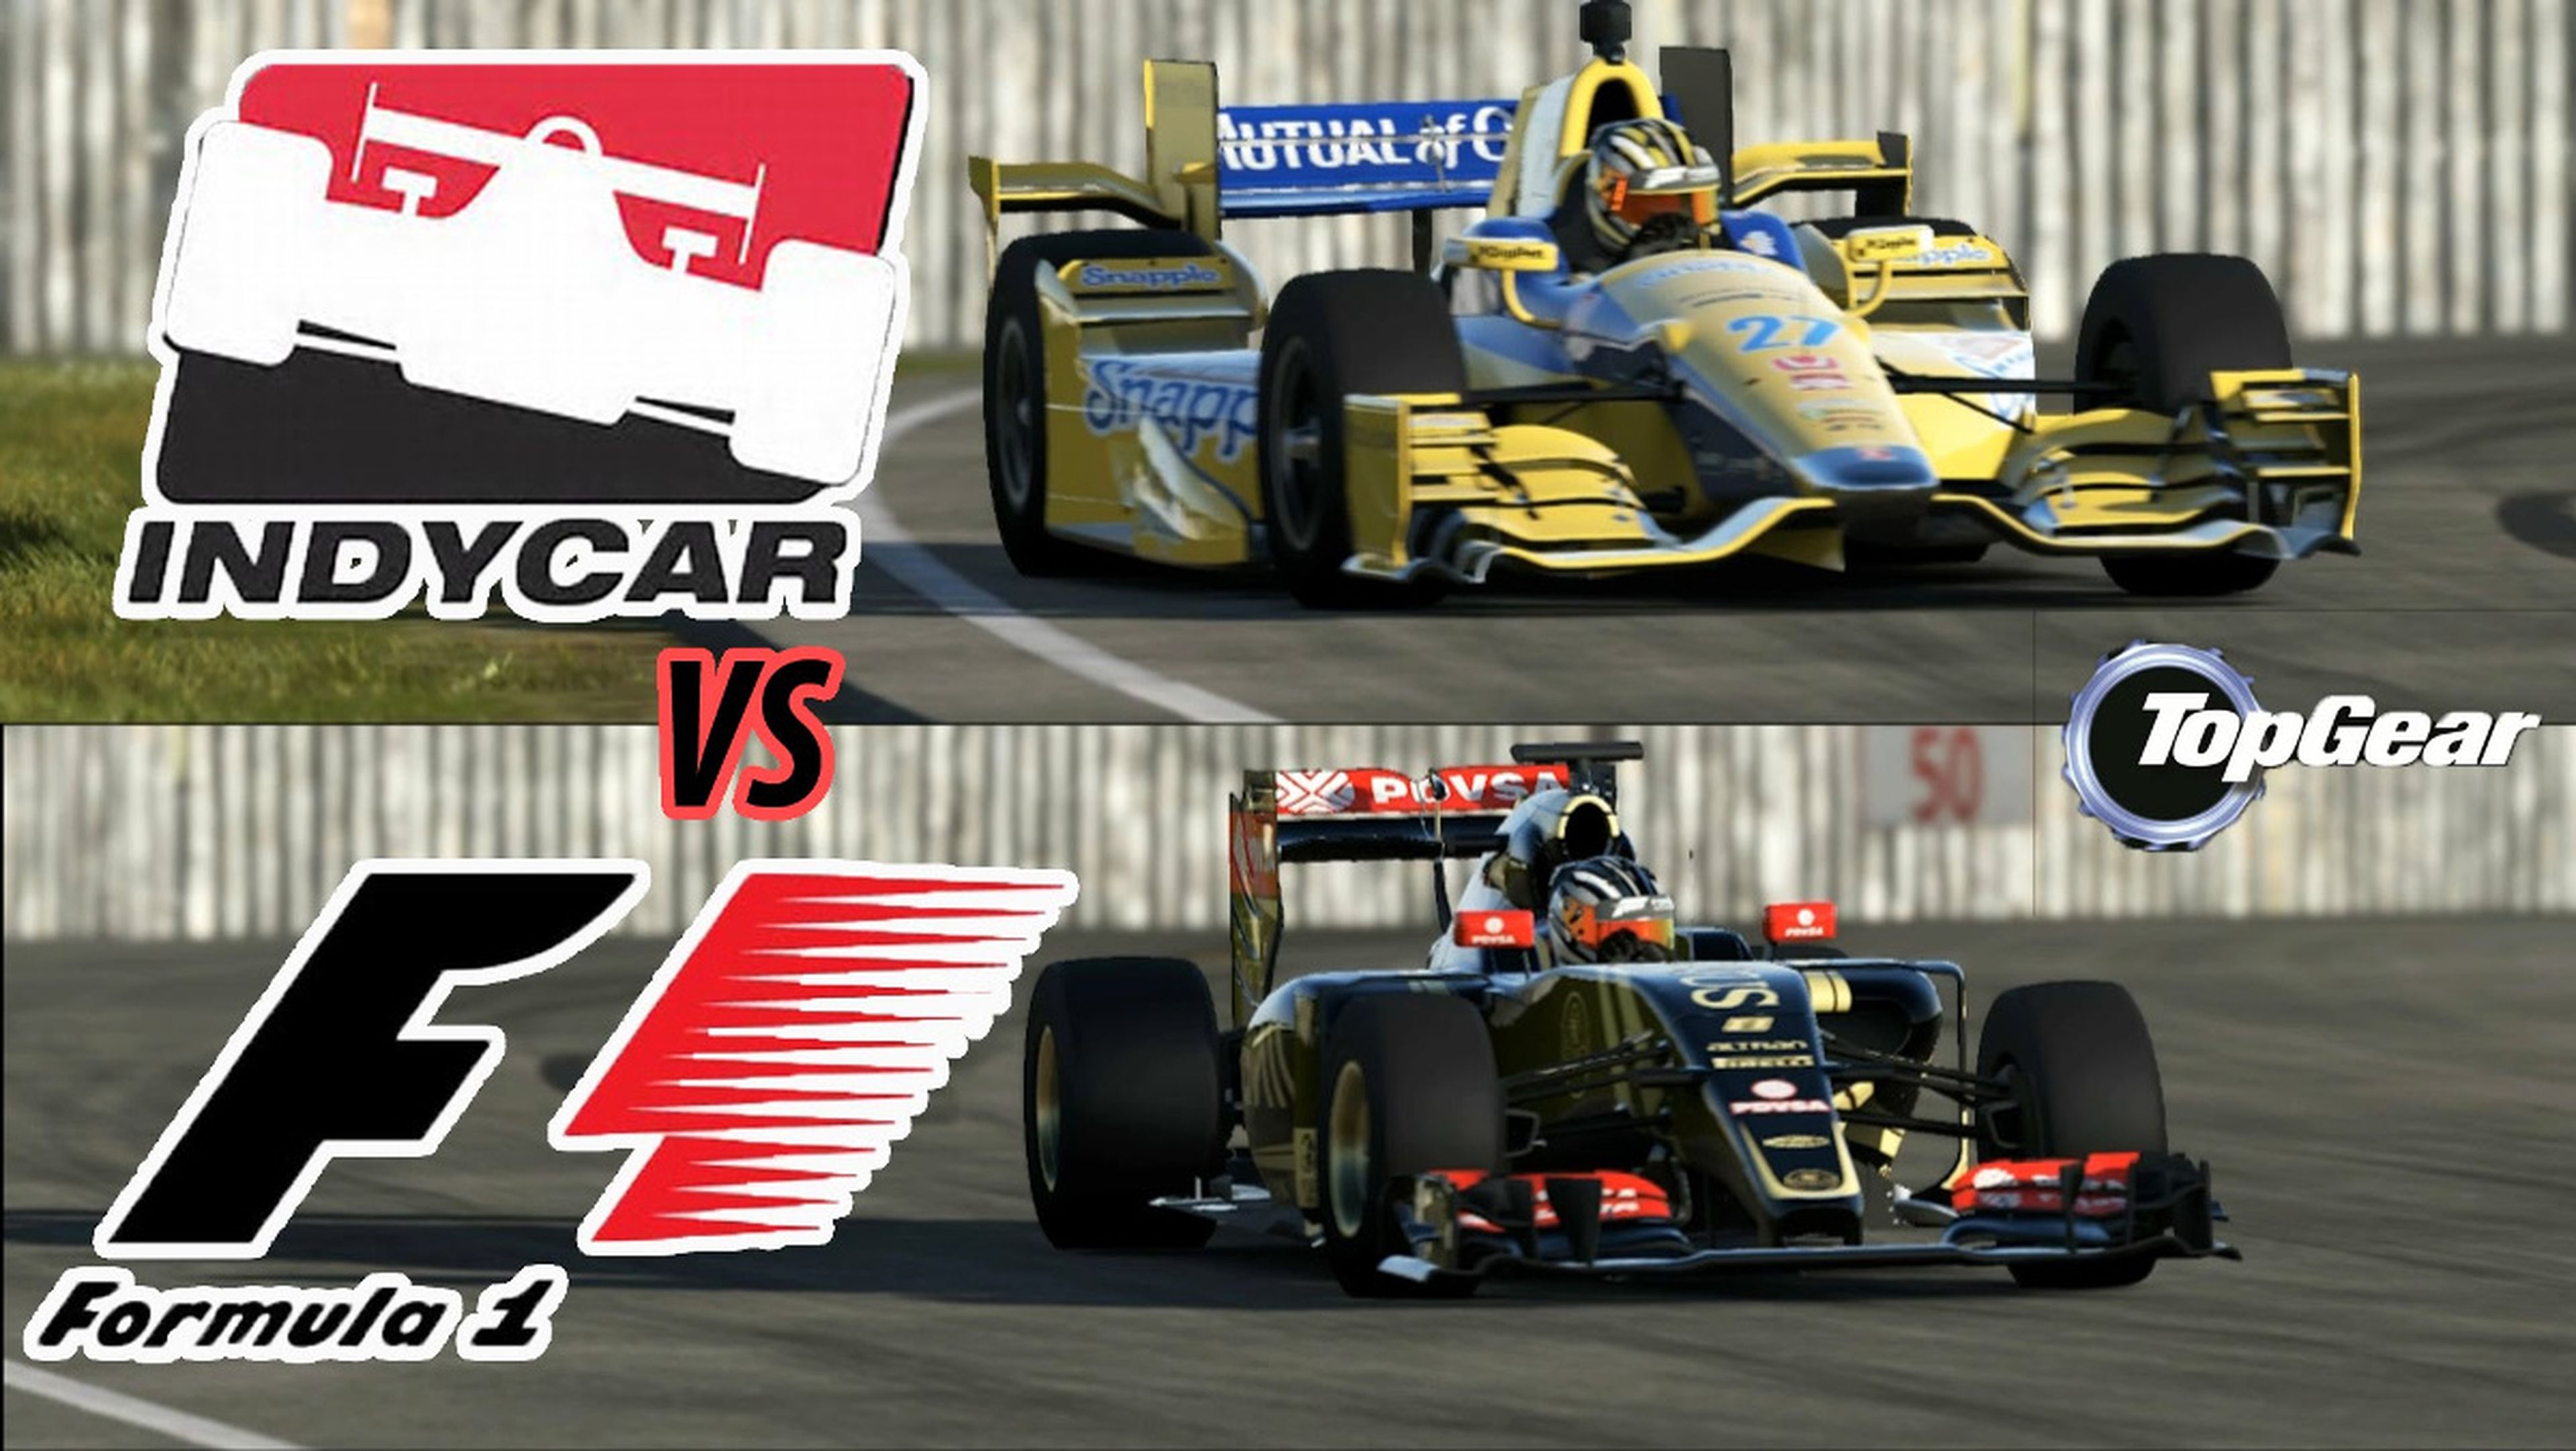 F1 VS INDYCAR